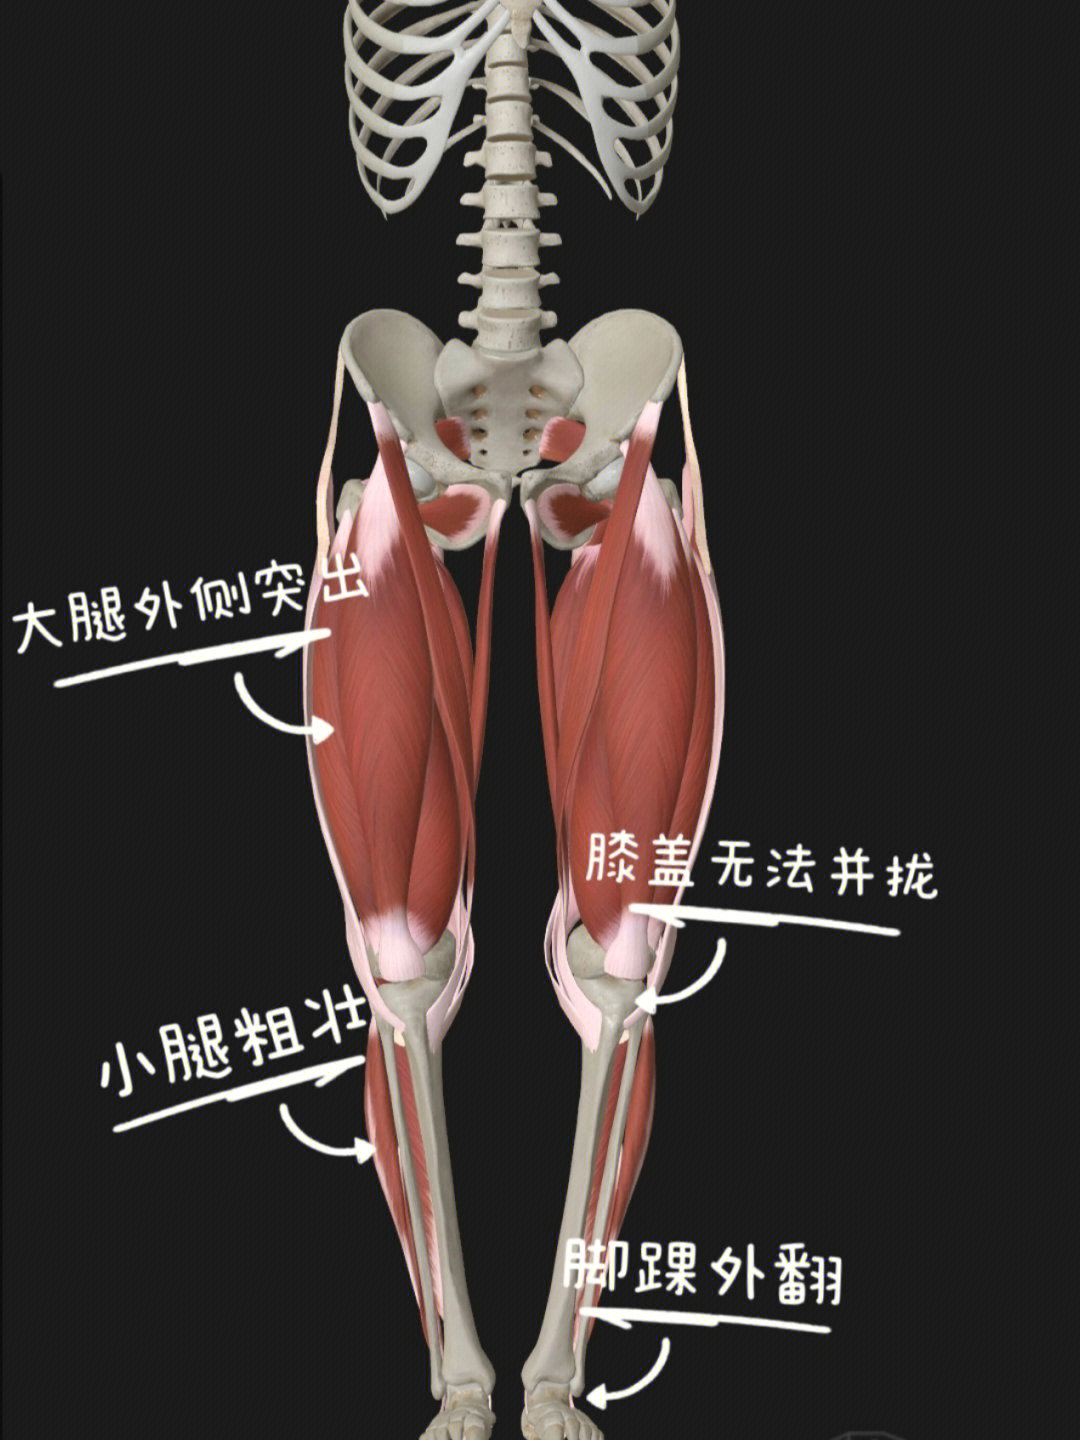 不良的走路姿势让大腿前侧代偿太多,股骨内旋,膝盖内扣,胫骨发生扭转